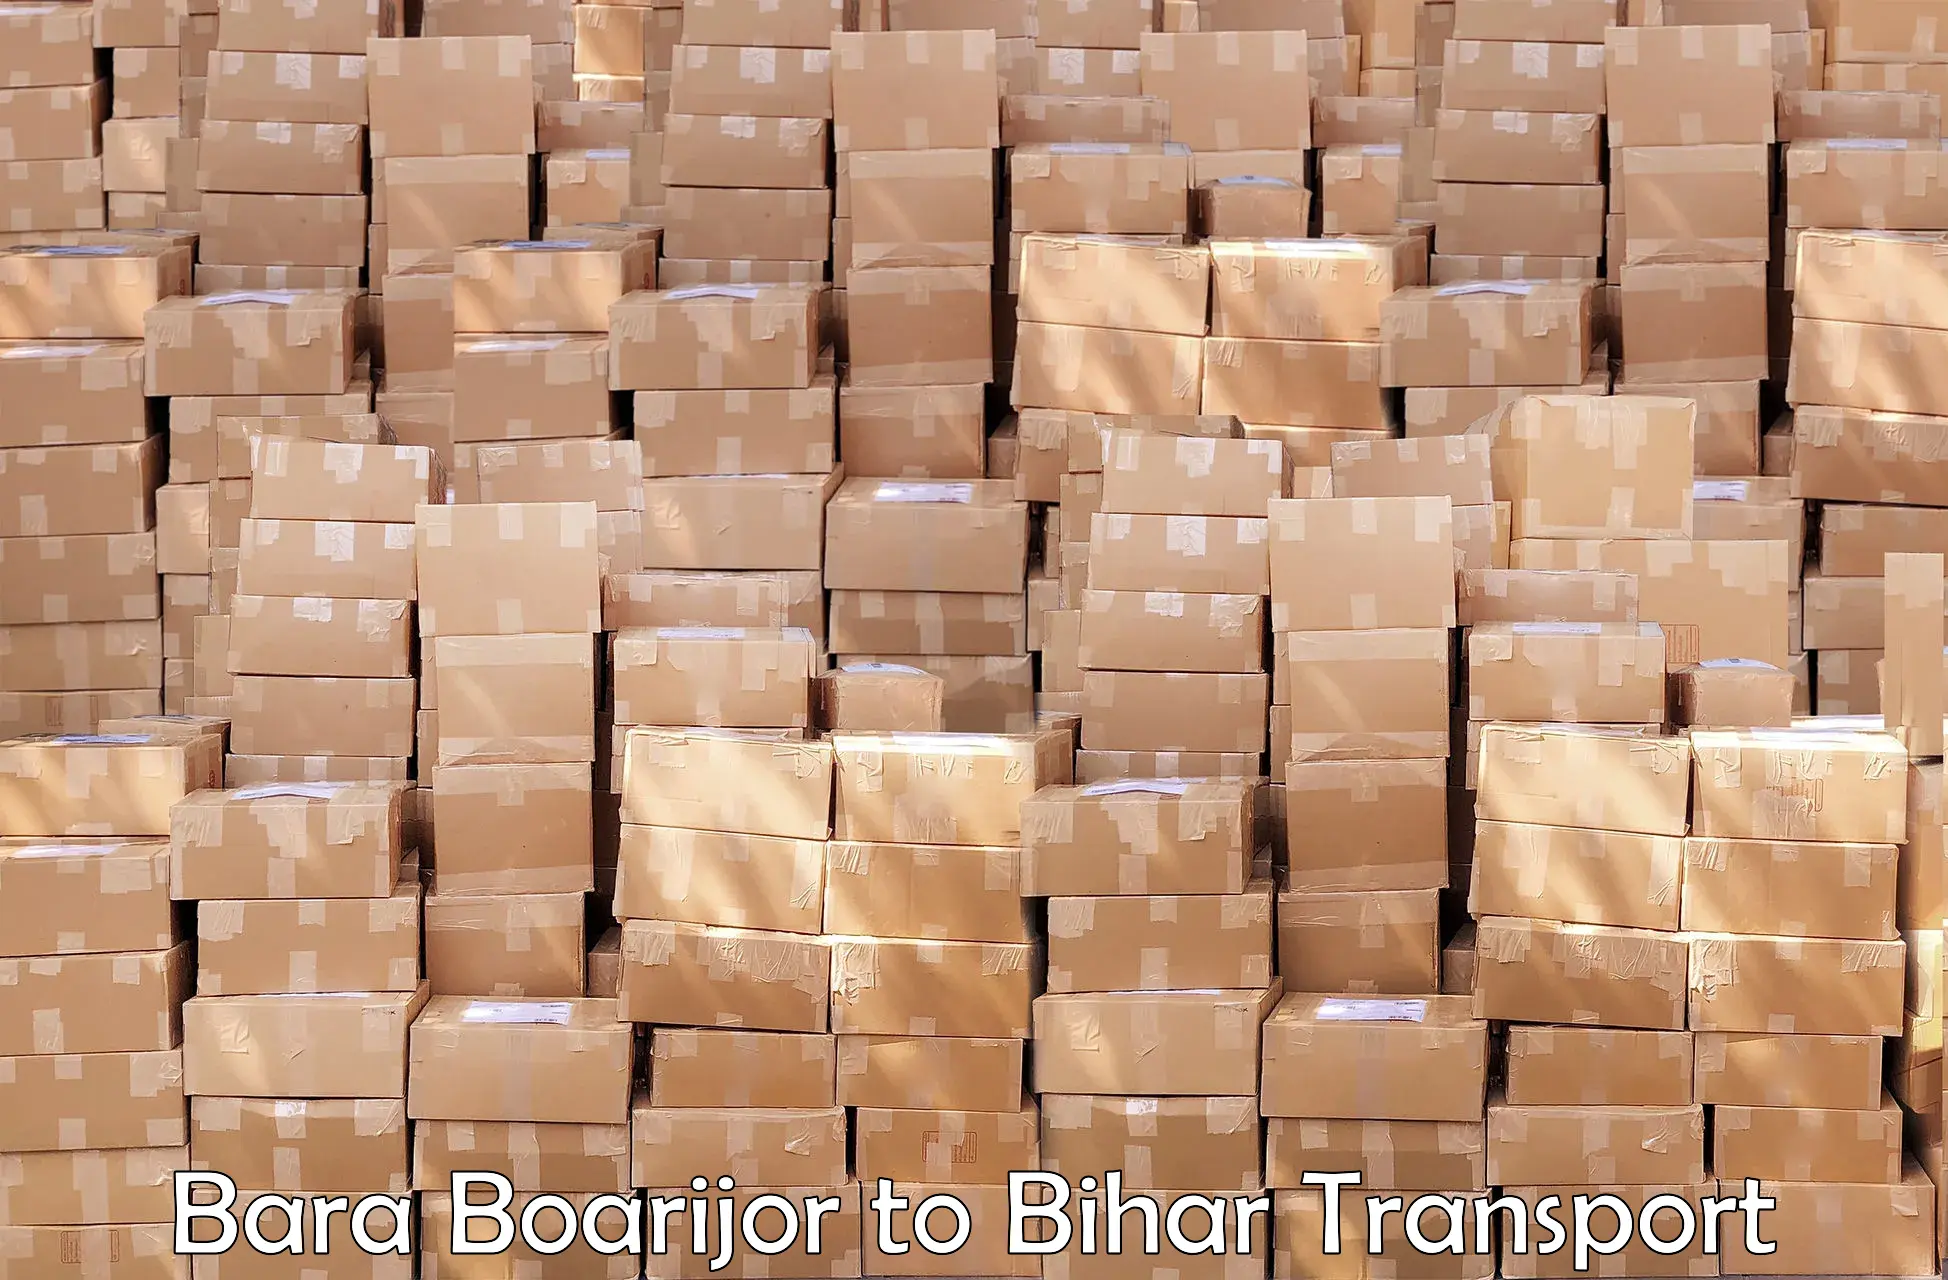 Container transport service Bara Boarijor to Rusera